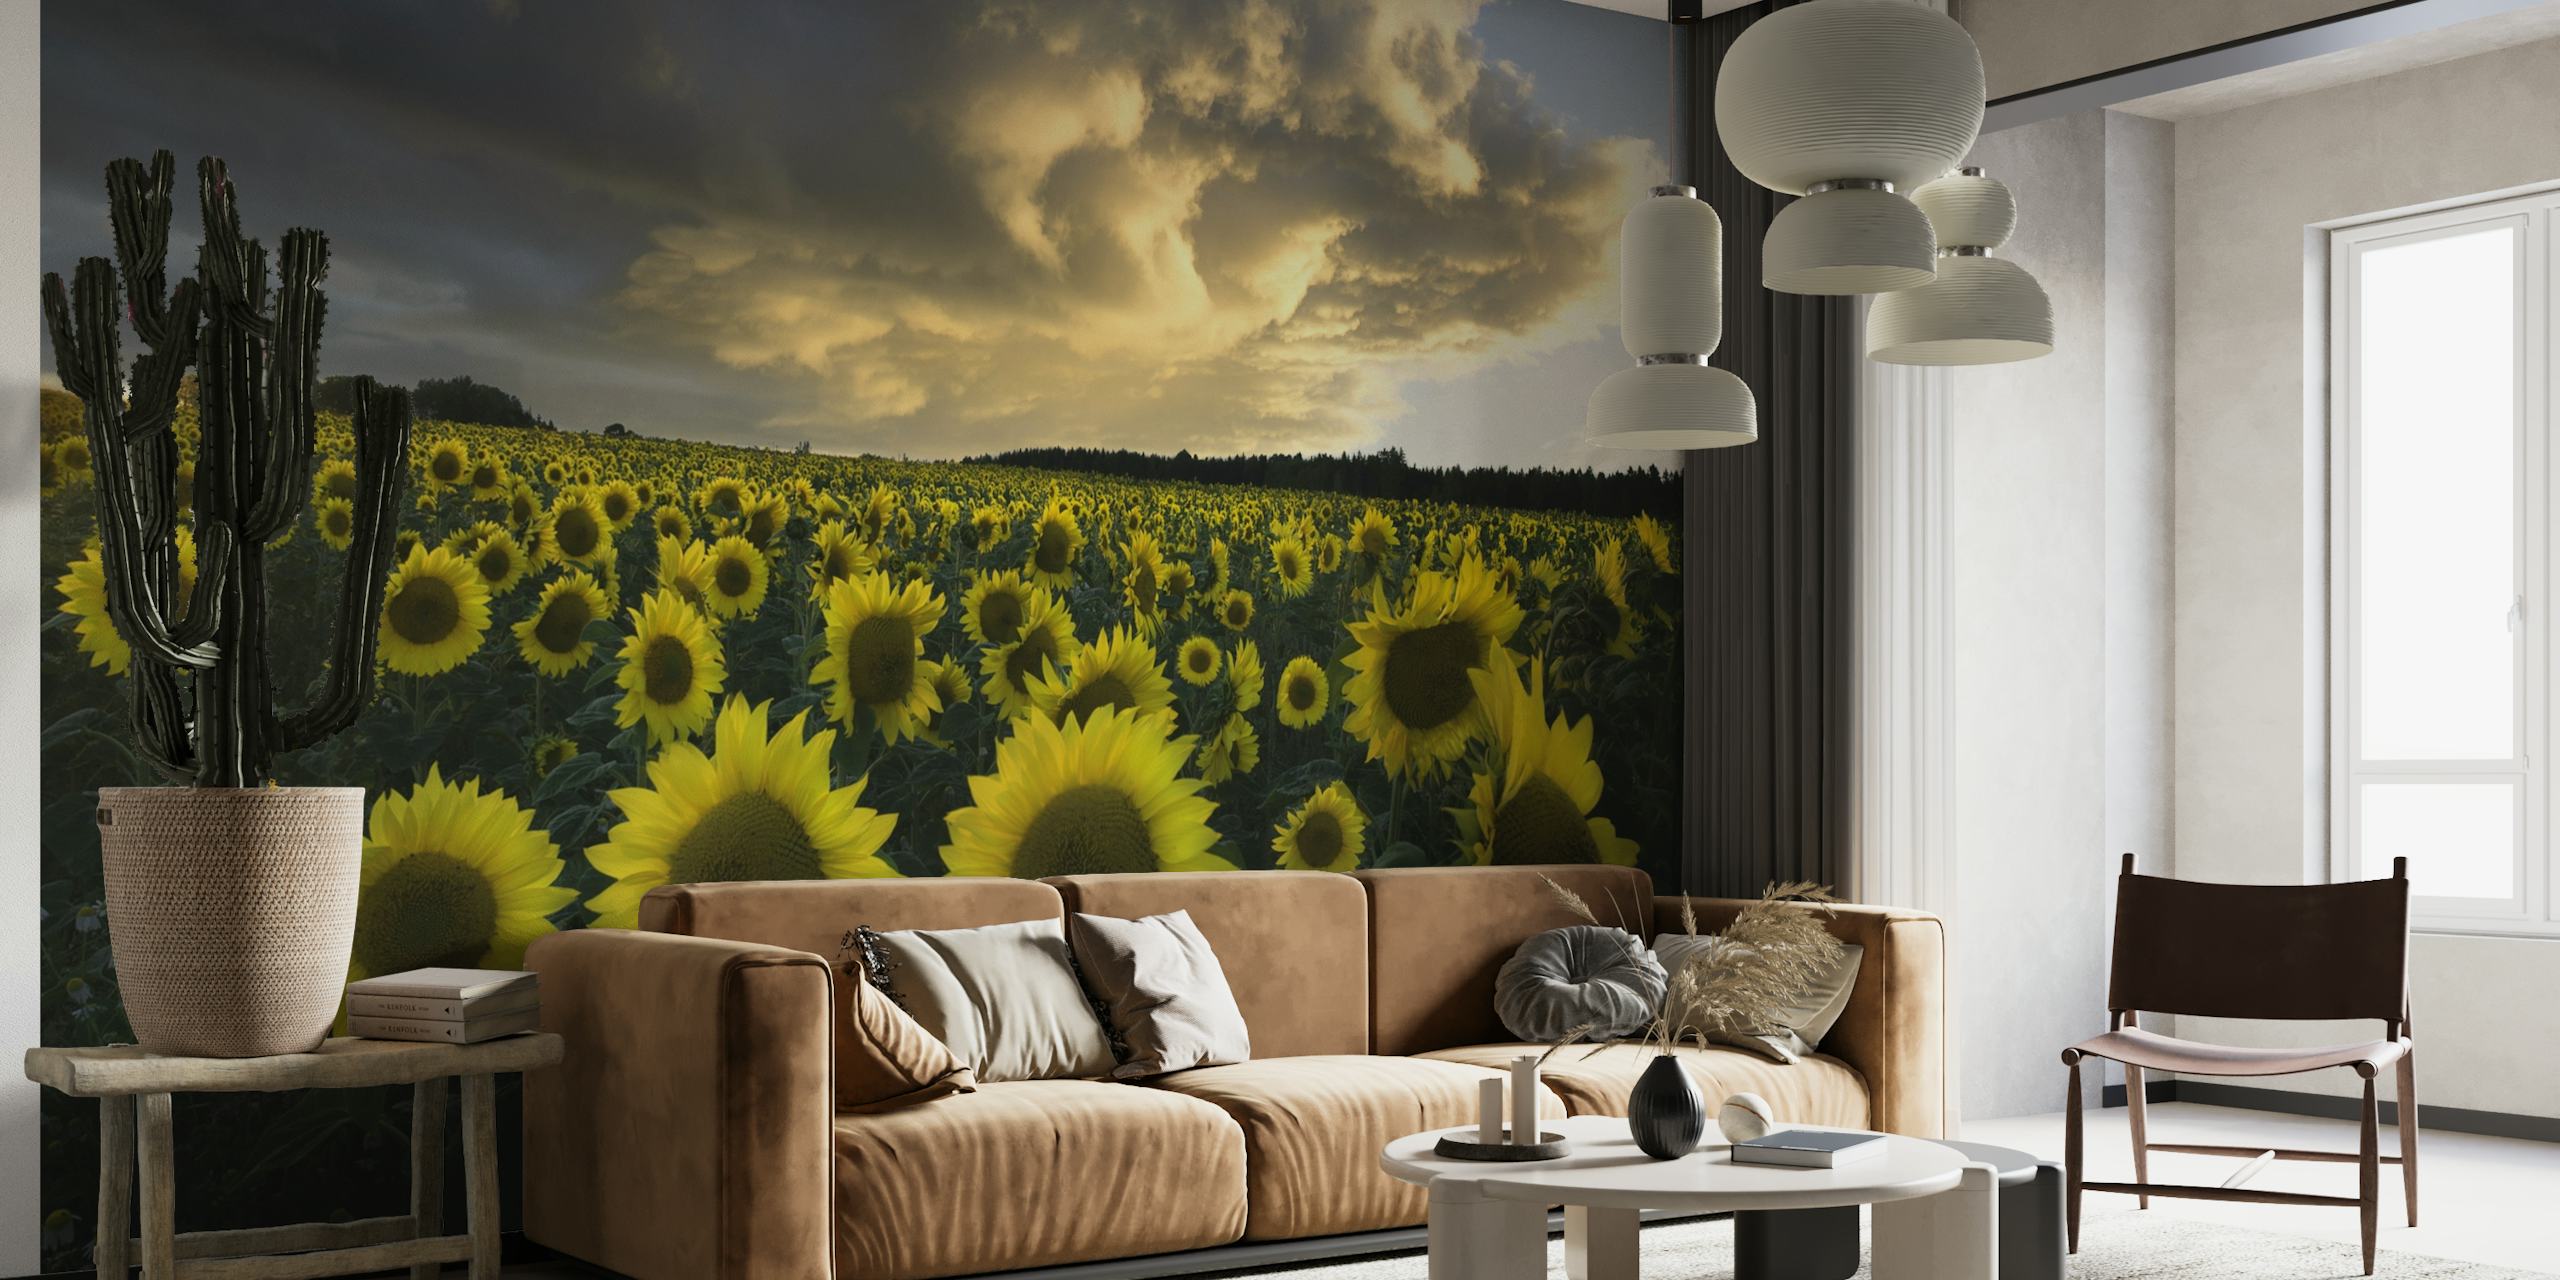 Solrosor i Sverige fototapet som visar upp ett fält av blommande solrosor under en molnig himmel